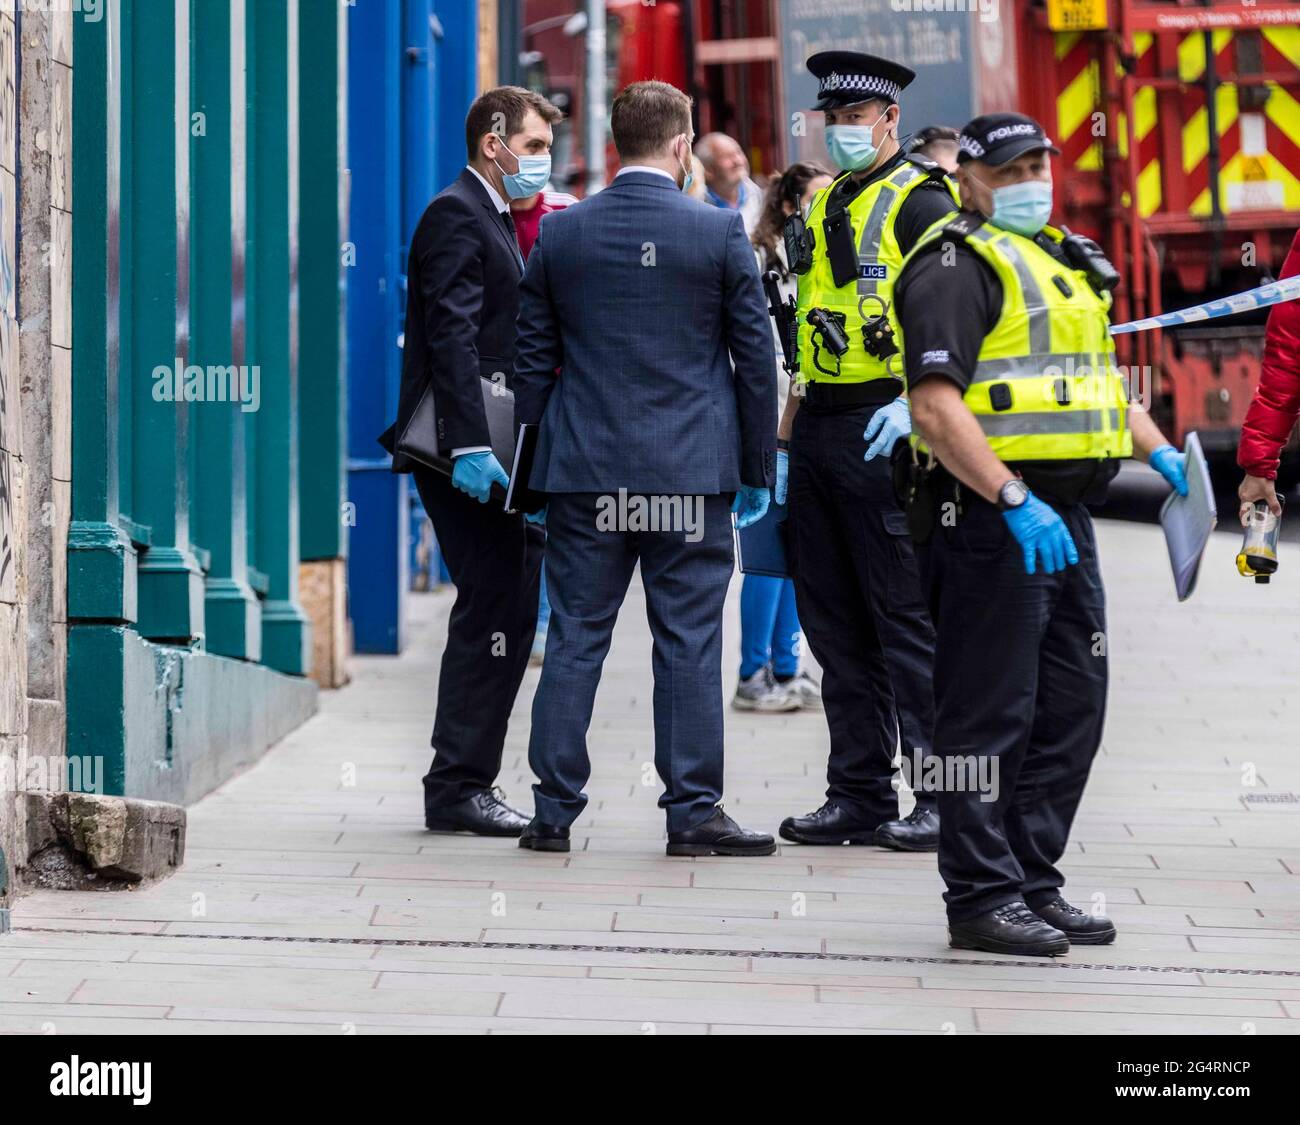 Edimburgo, Reino Unido. 23 de junio de 2021 Foto: La policía ha rodeado un piso en la calle Leith de Edimburgo. Crédito: Rico Dyson/Alamy Live News Foto de stock